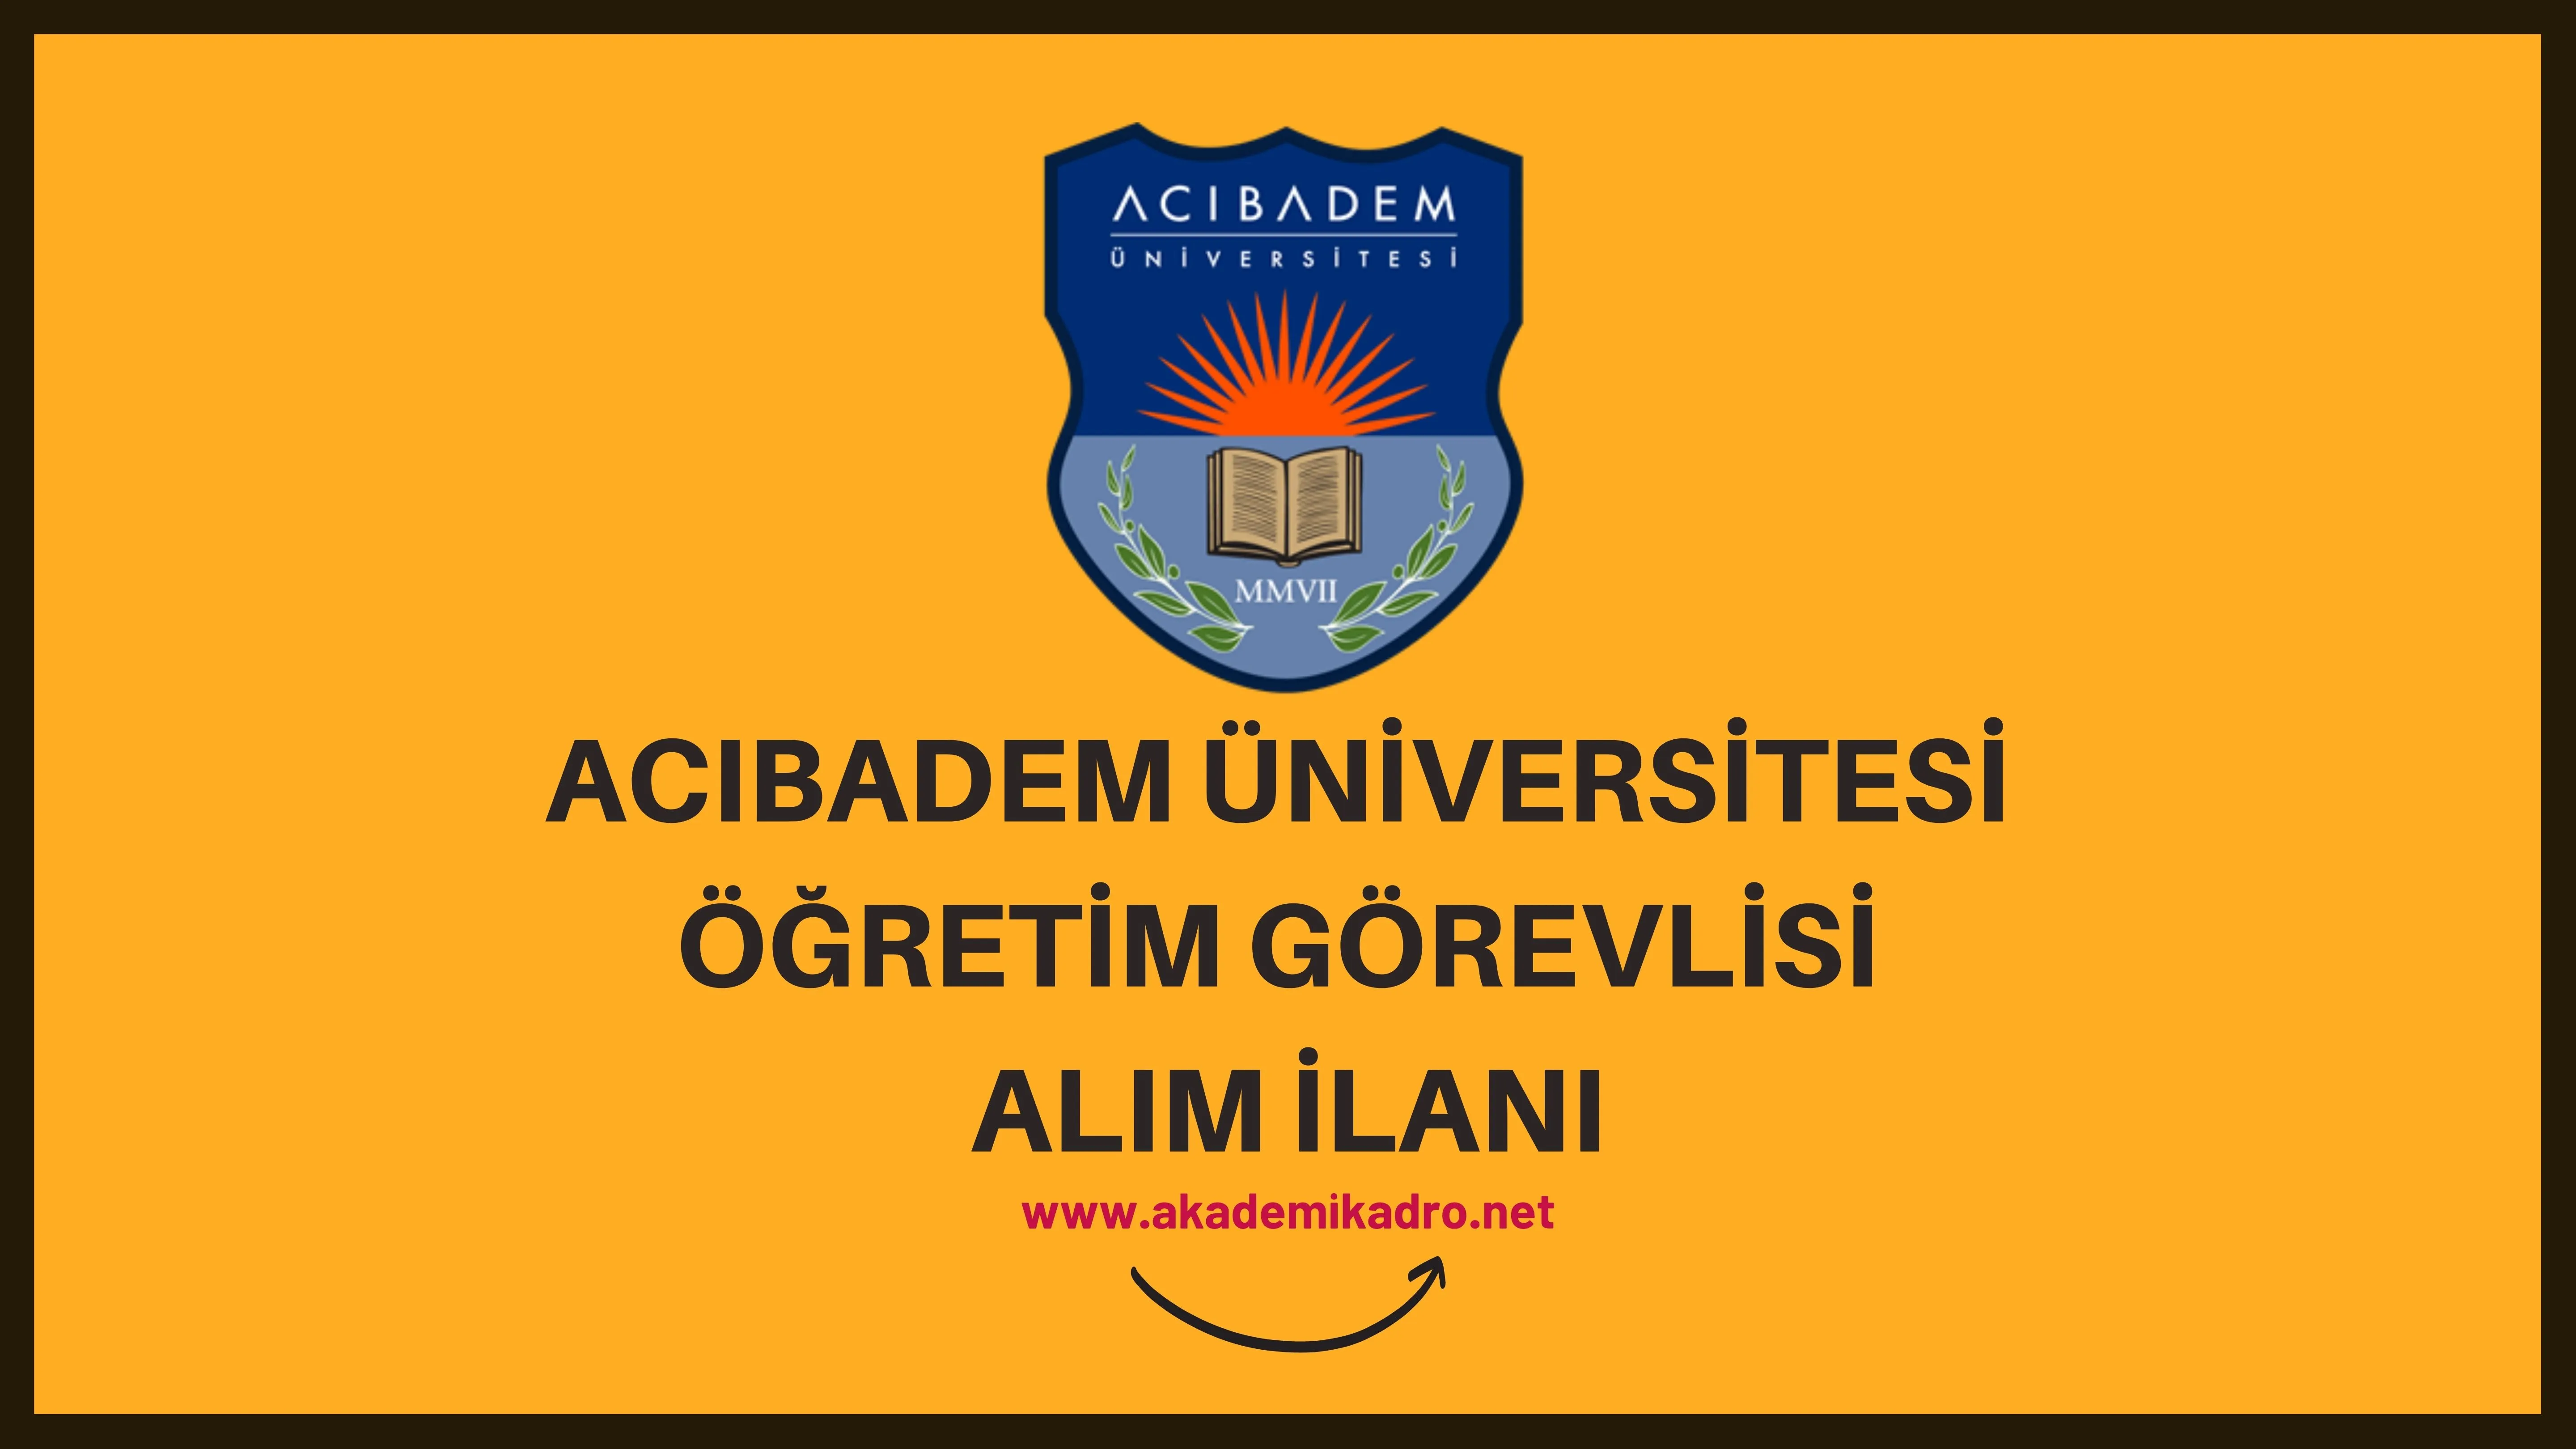 Acıbadem Mehmet Ali Aydınlar Üniversitesi Öğretim görevlisi alacak. Son başvuru tarihi 20 Ocak 2023.